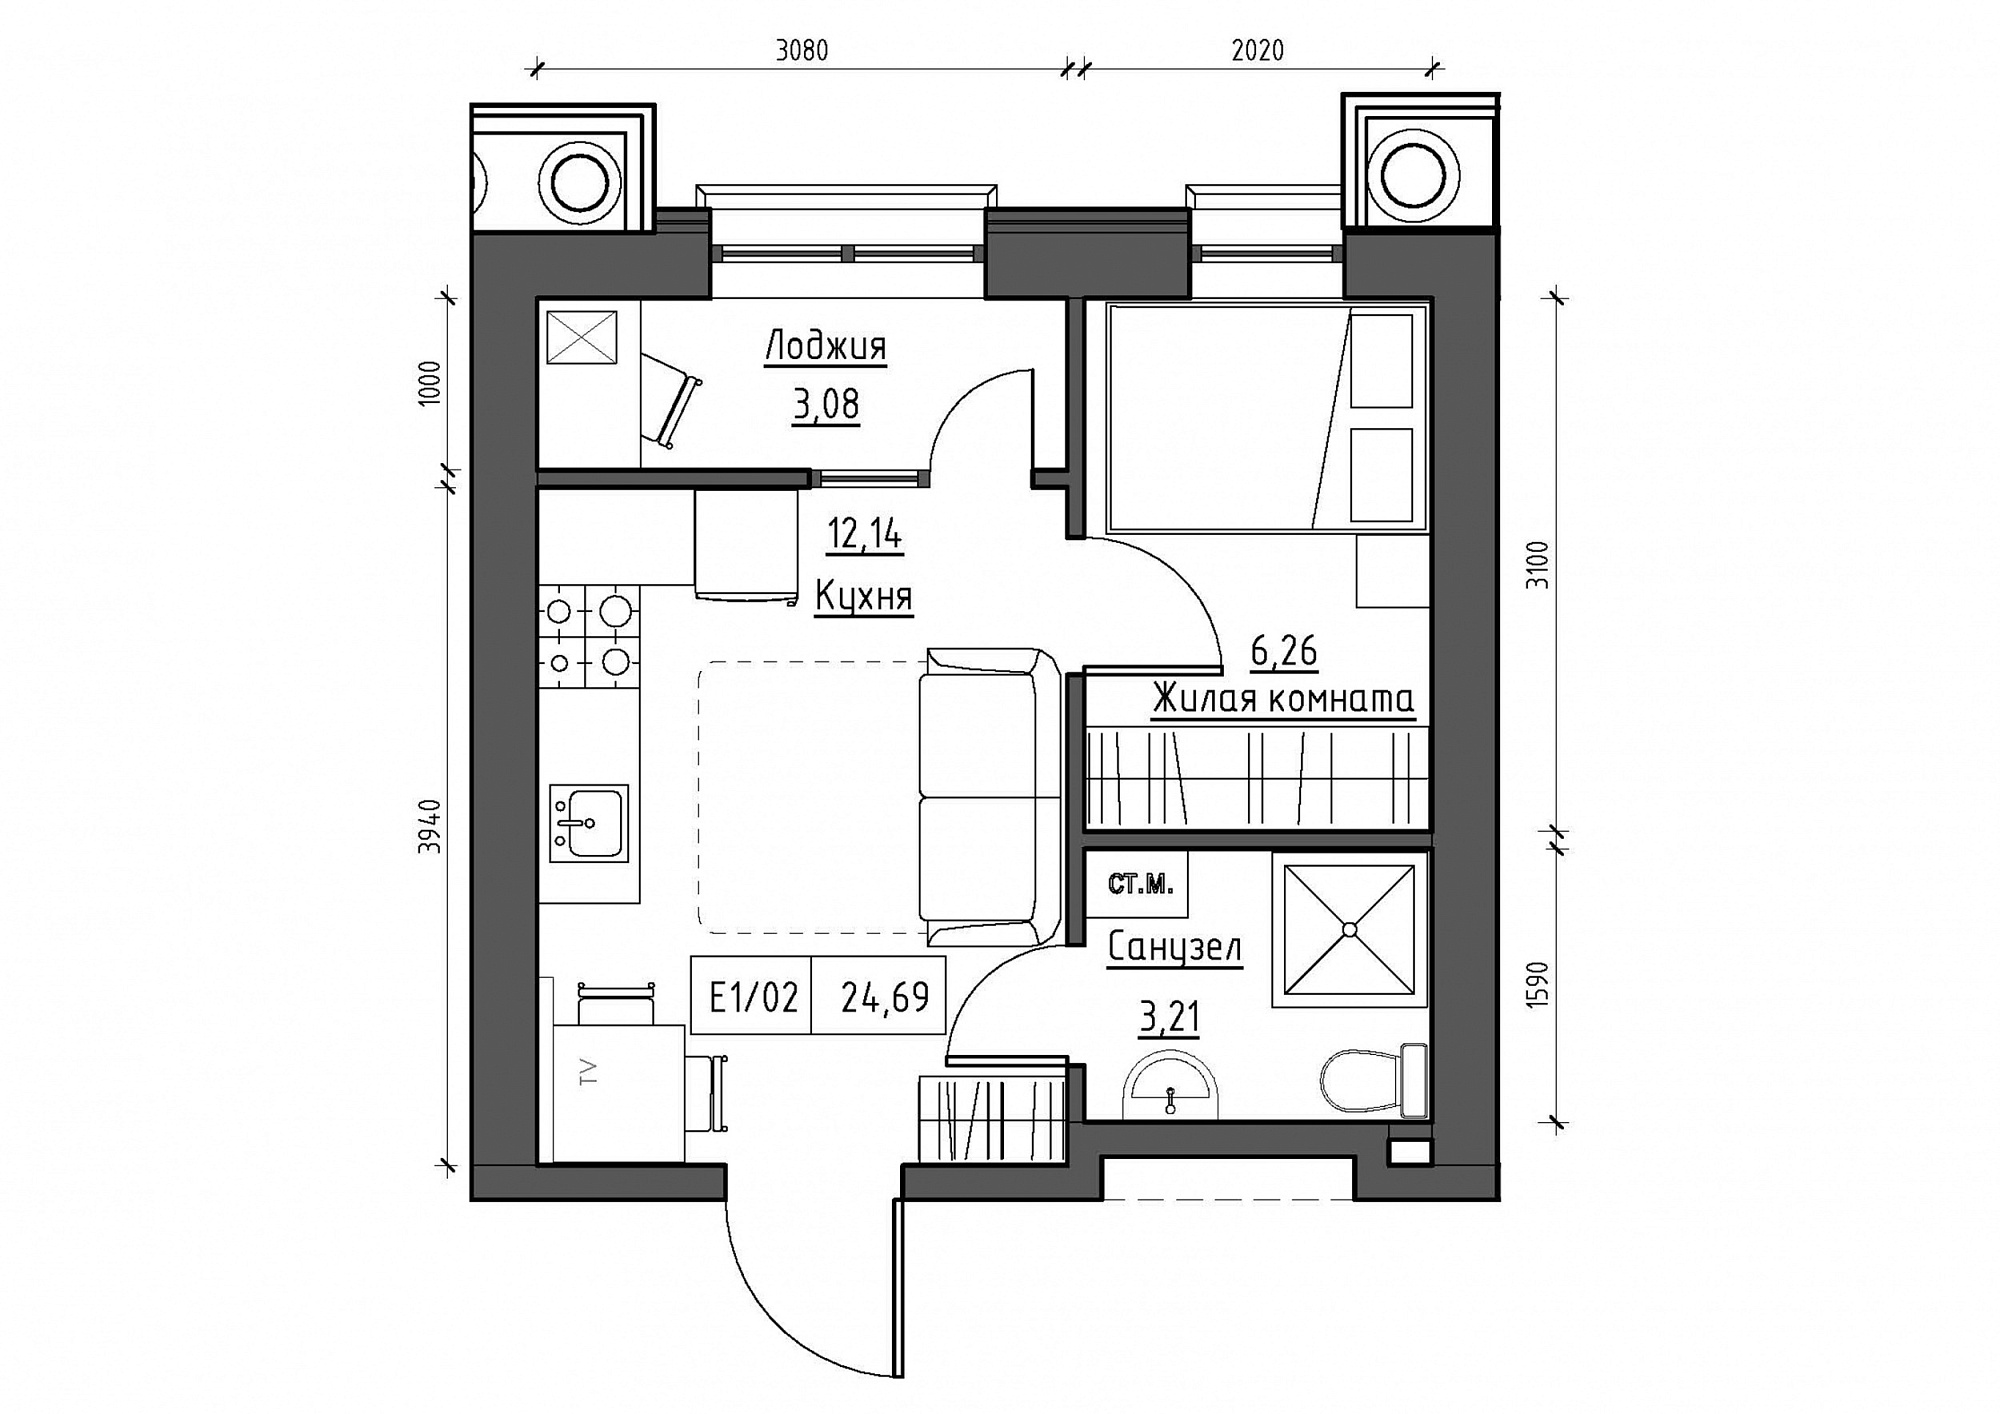 Планування 1-к квартира площею 25.11м2, KS-012-03/0002.